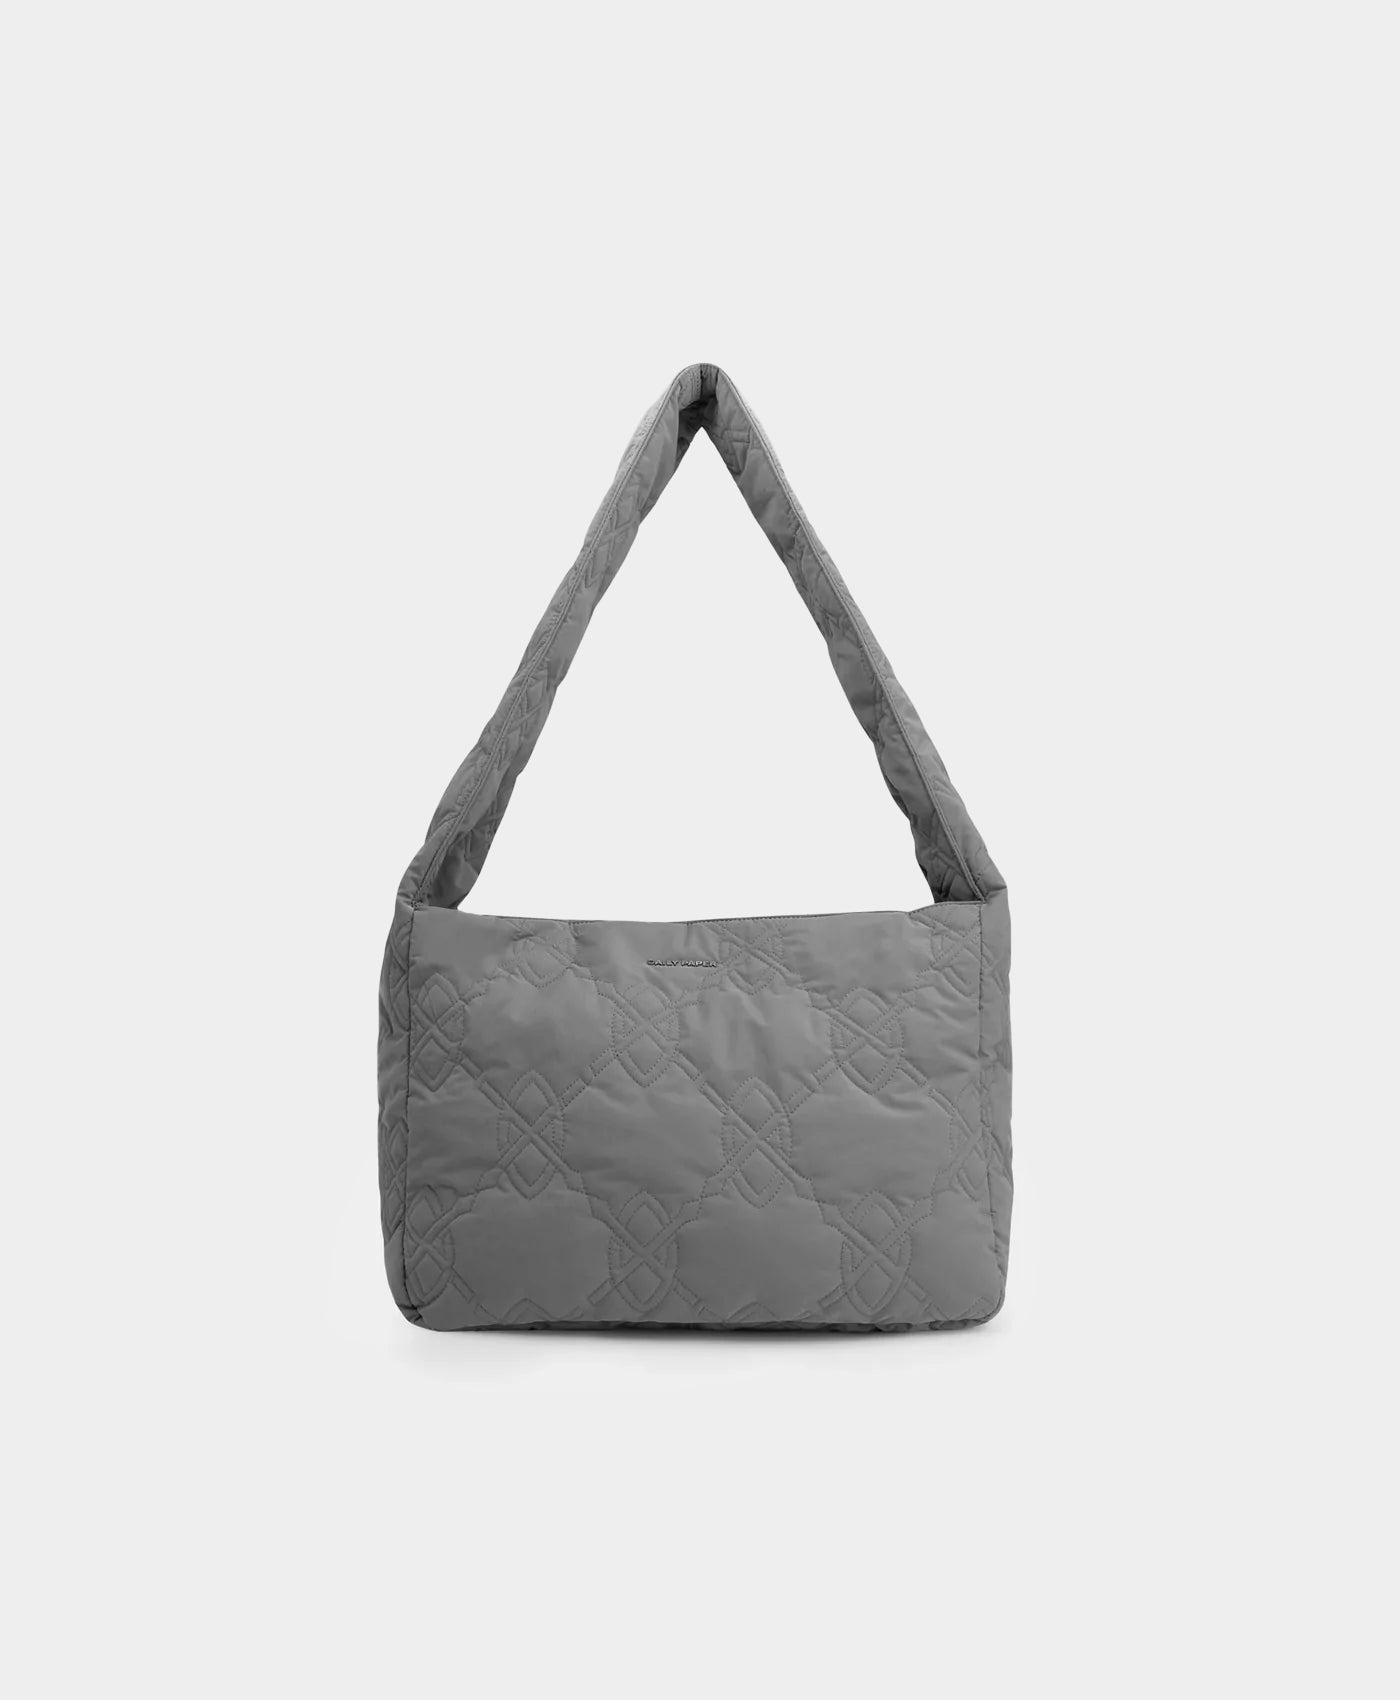 DP - Magnet Grey Noto Bag - Packshot - Front